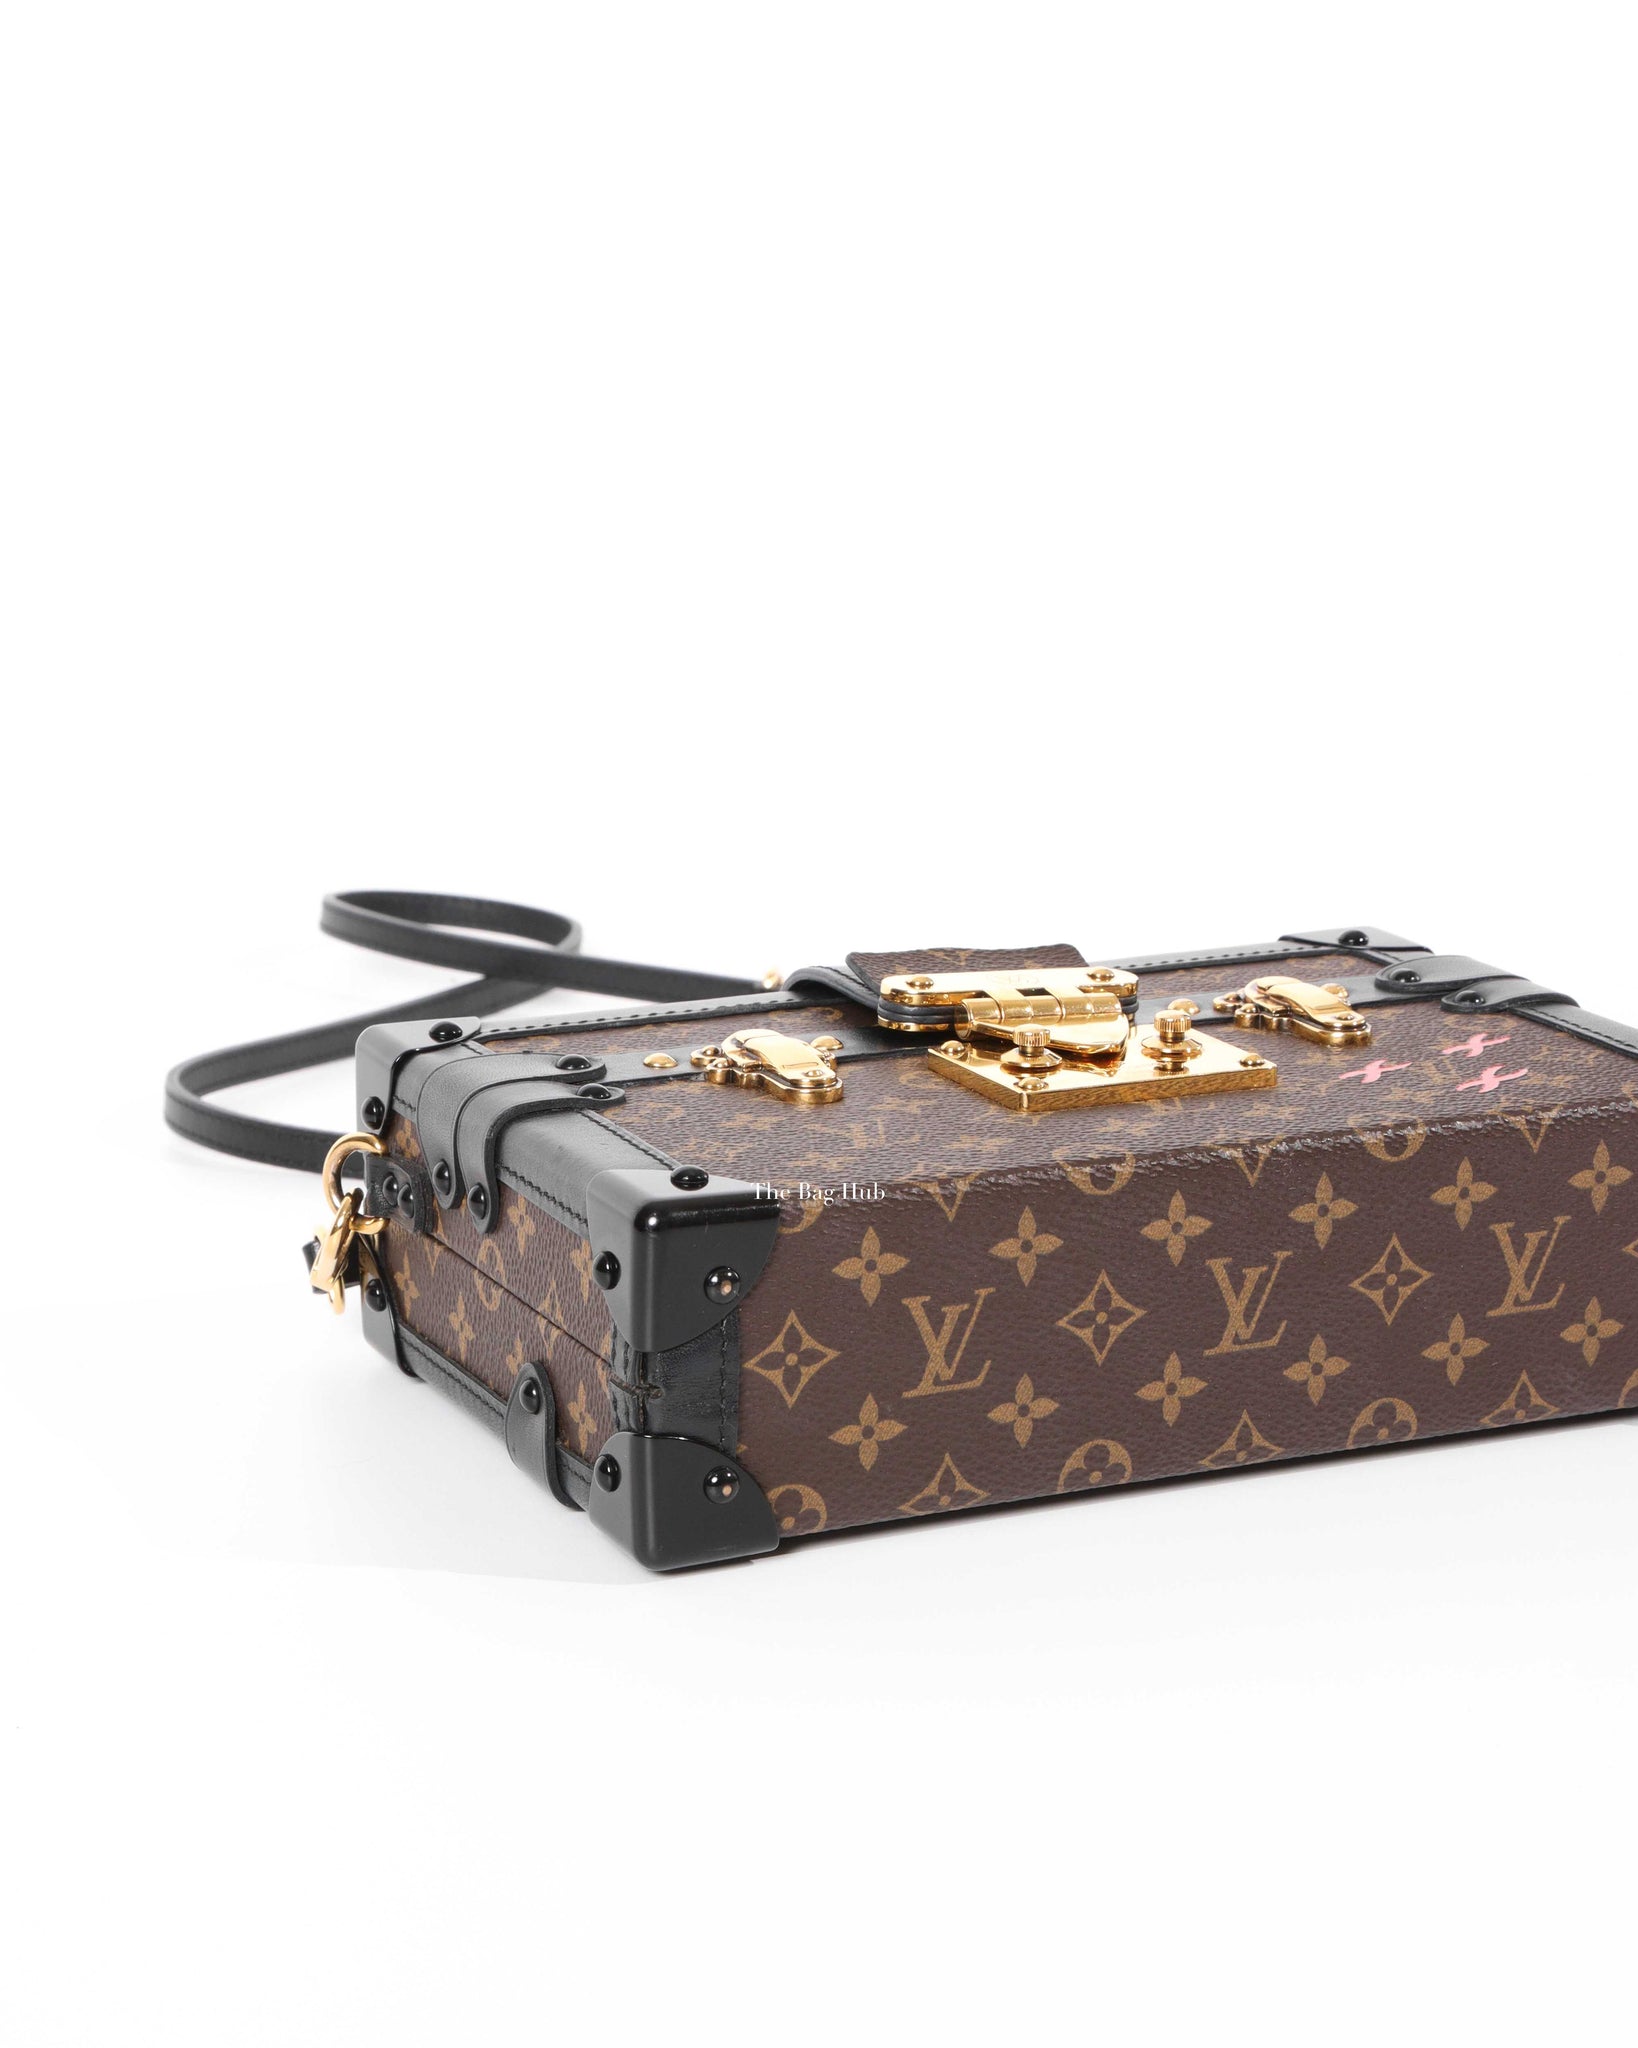 Sold at Auction: LOUIS VUITTON Petite Malle Monogram Trunk Handbag w/ Shoulder  Strap